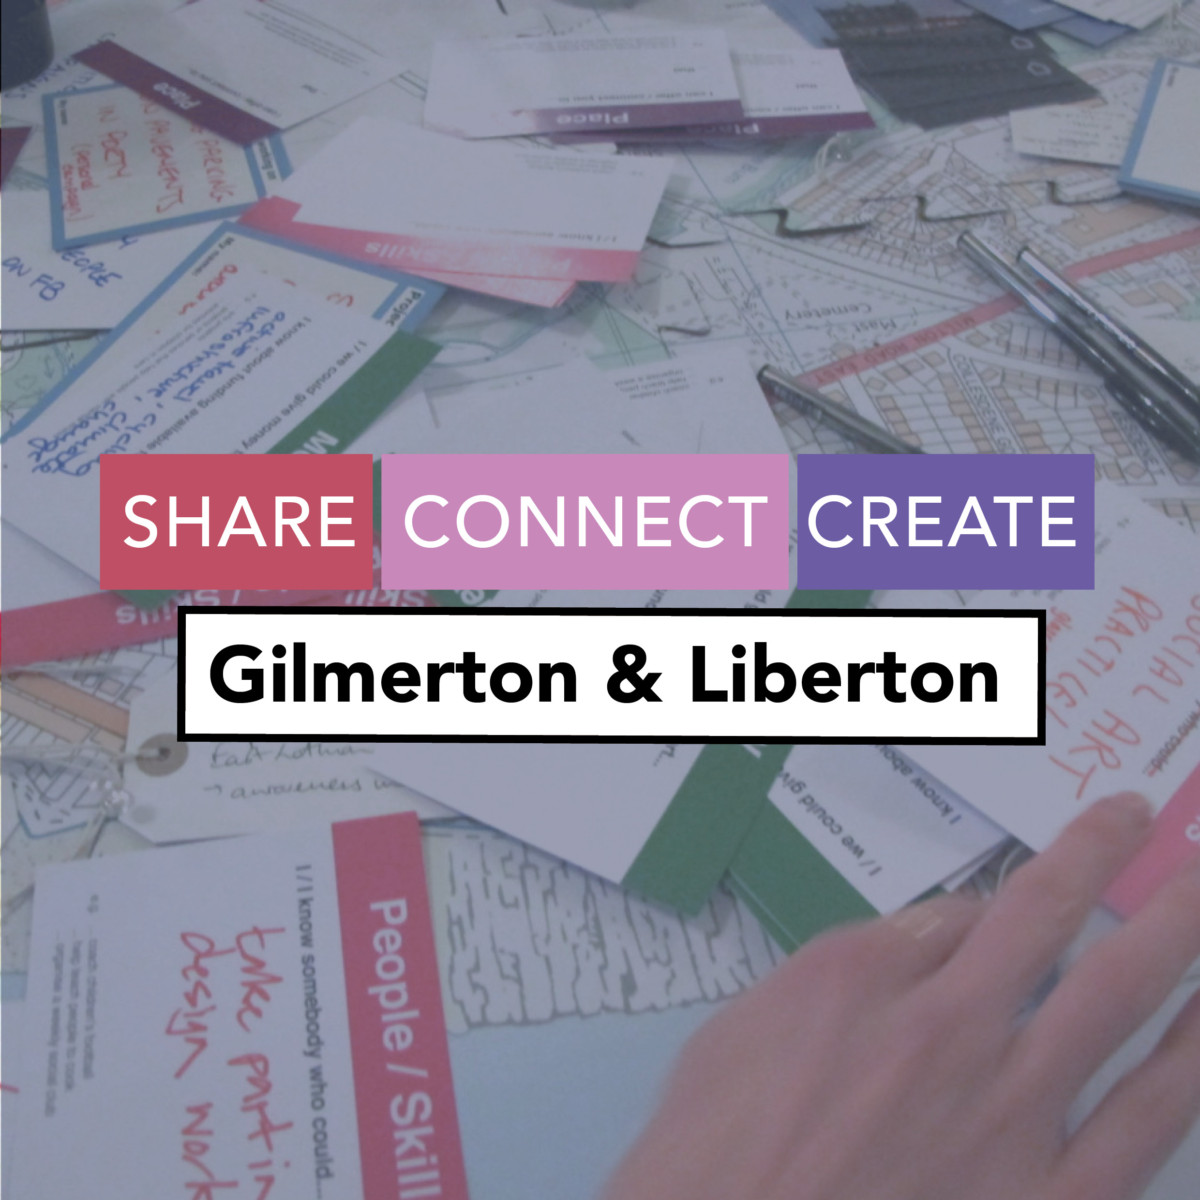 Share, Connect, Create: Gilmerton & Liberton